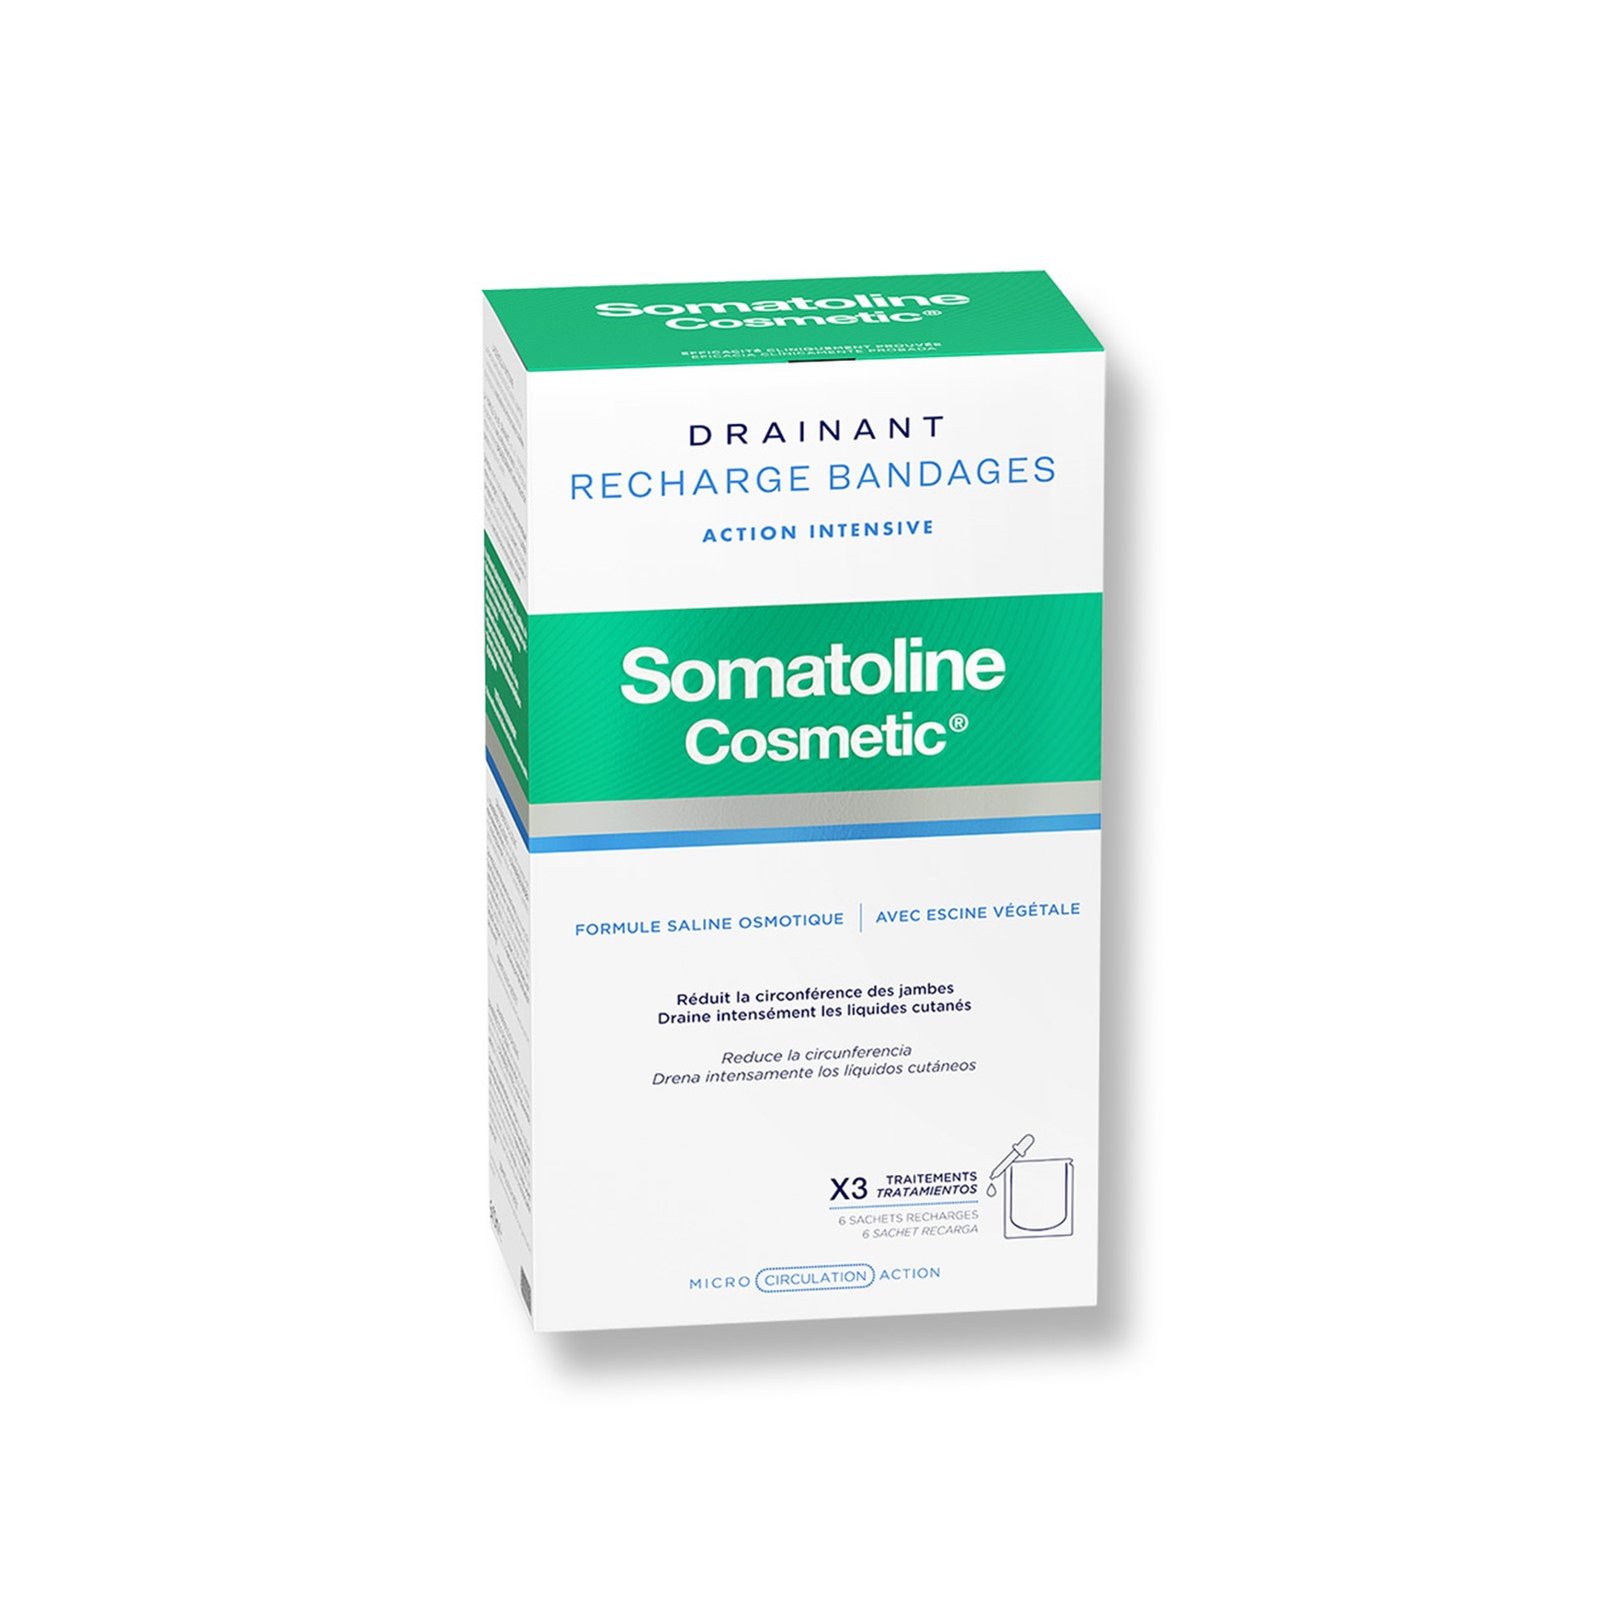 Somatoline Cosmetic Draining Bandages Refill x3